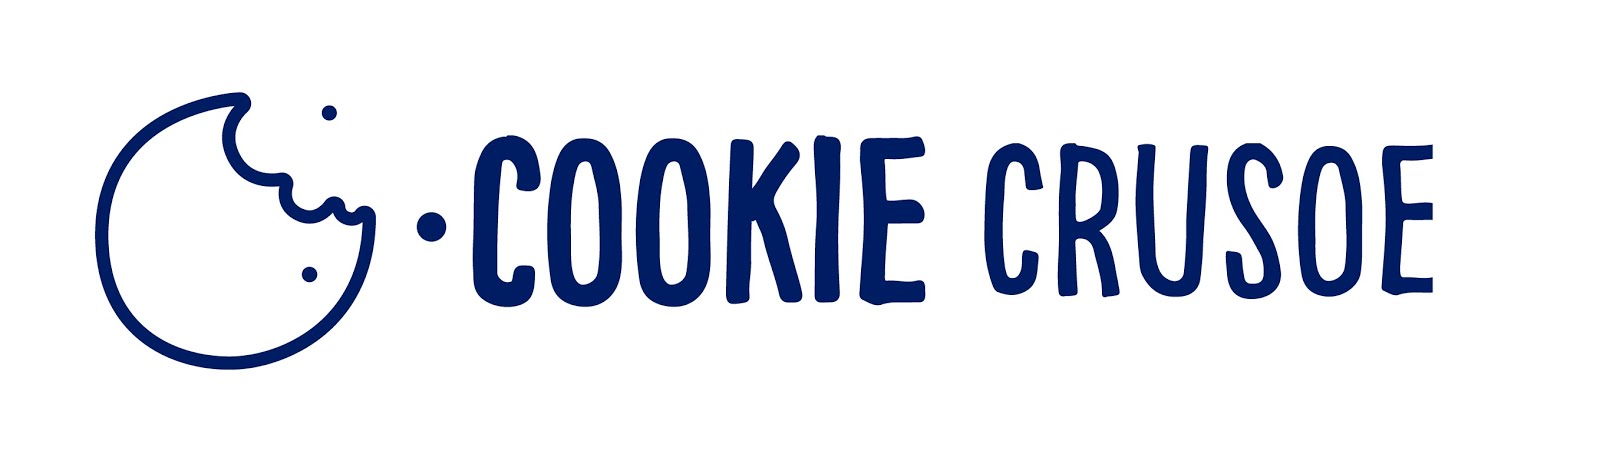 Cookie Crusoe